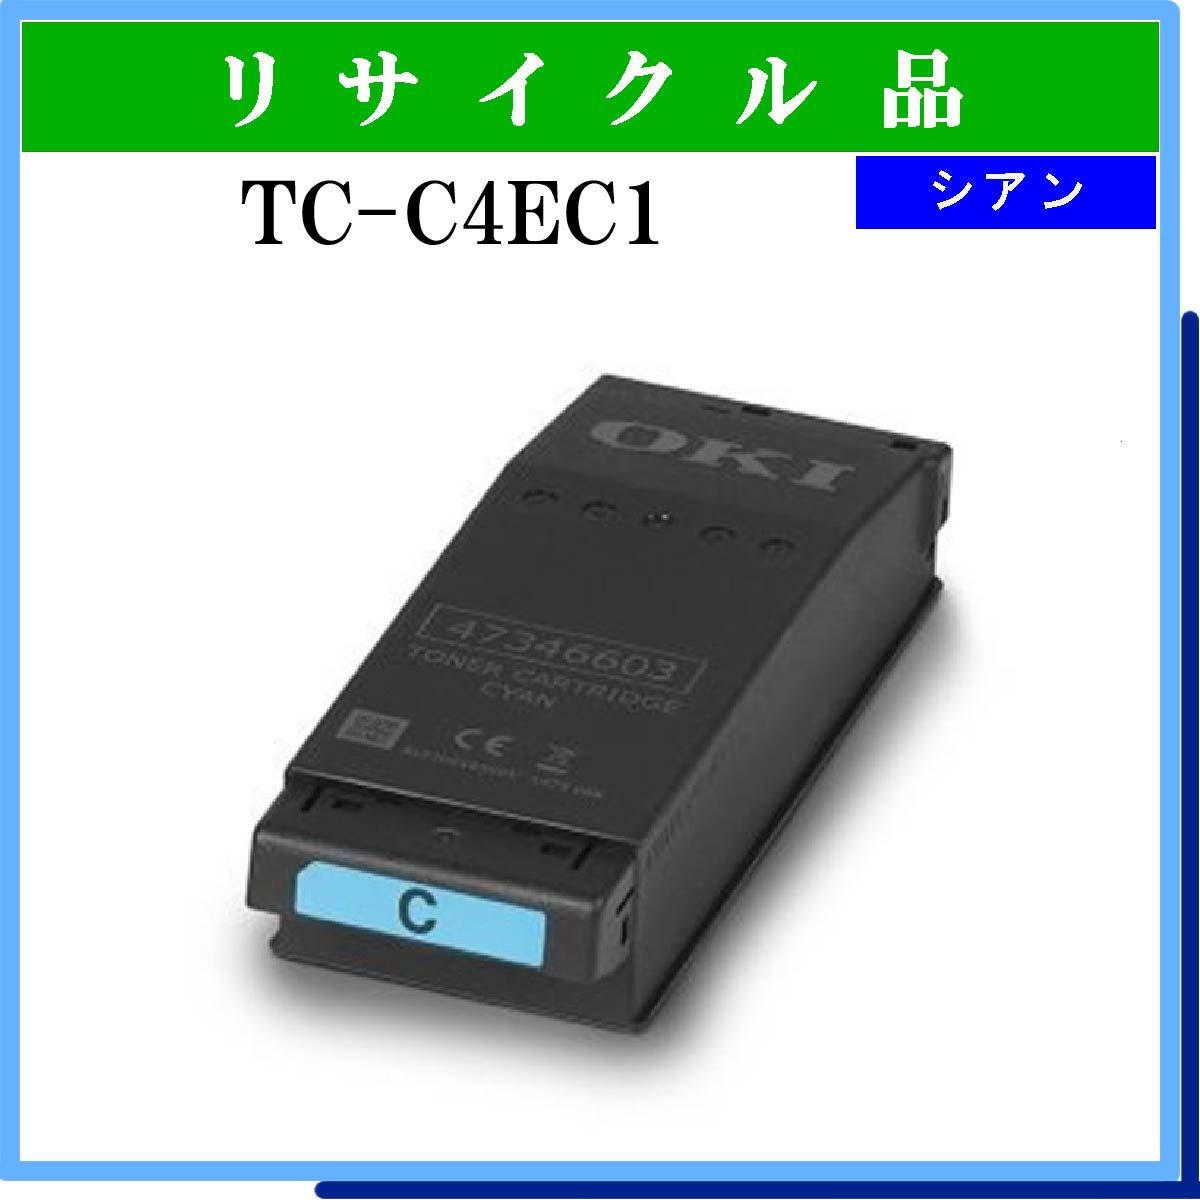 TC-C4EC1